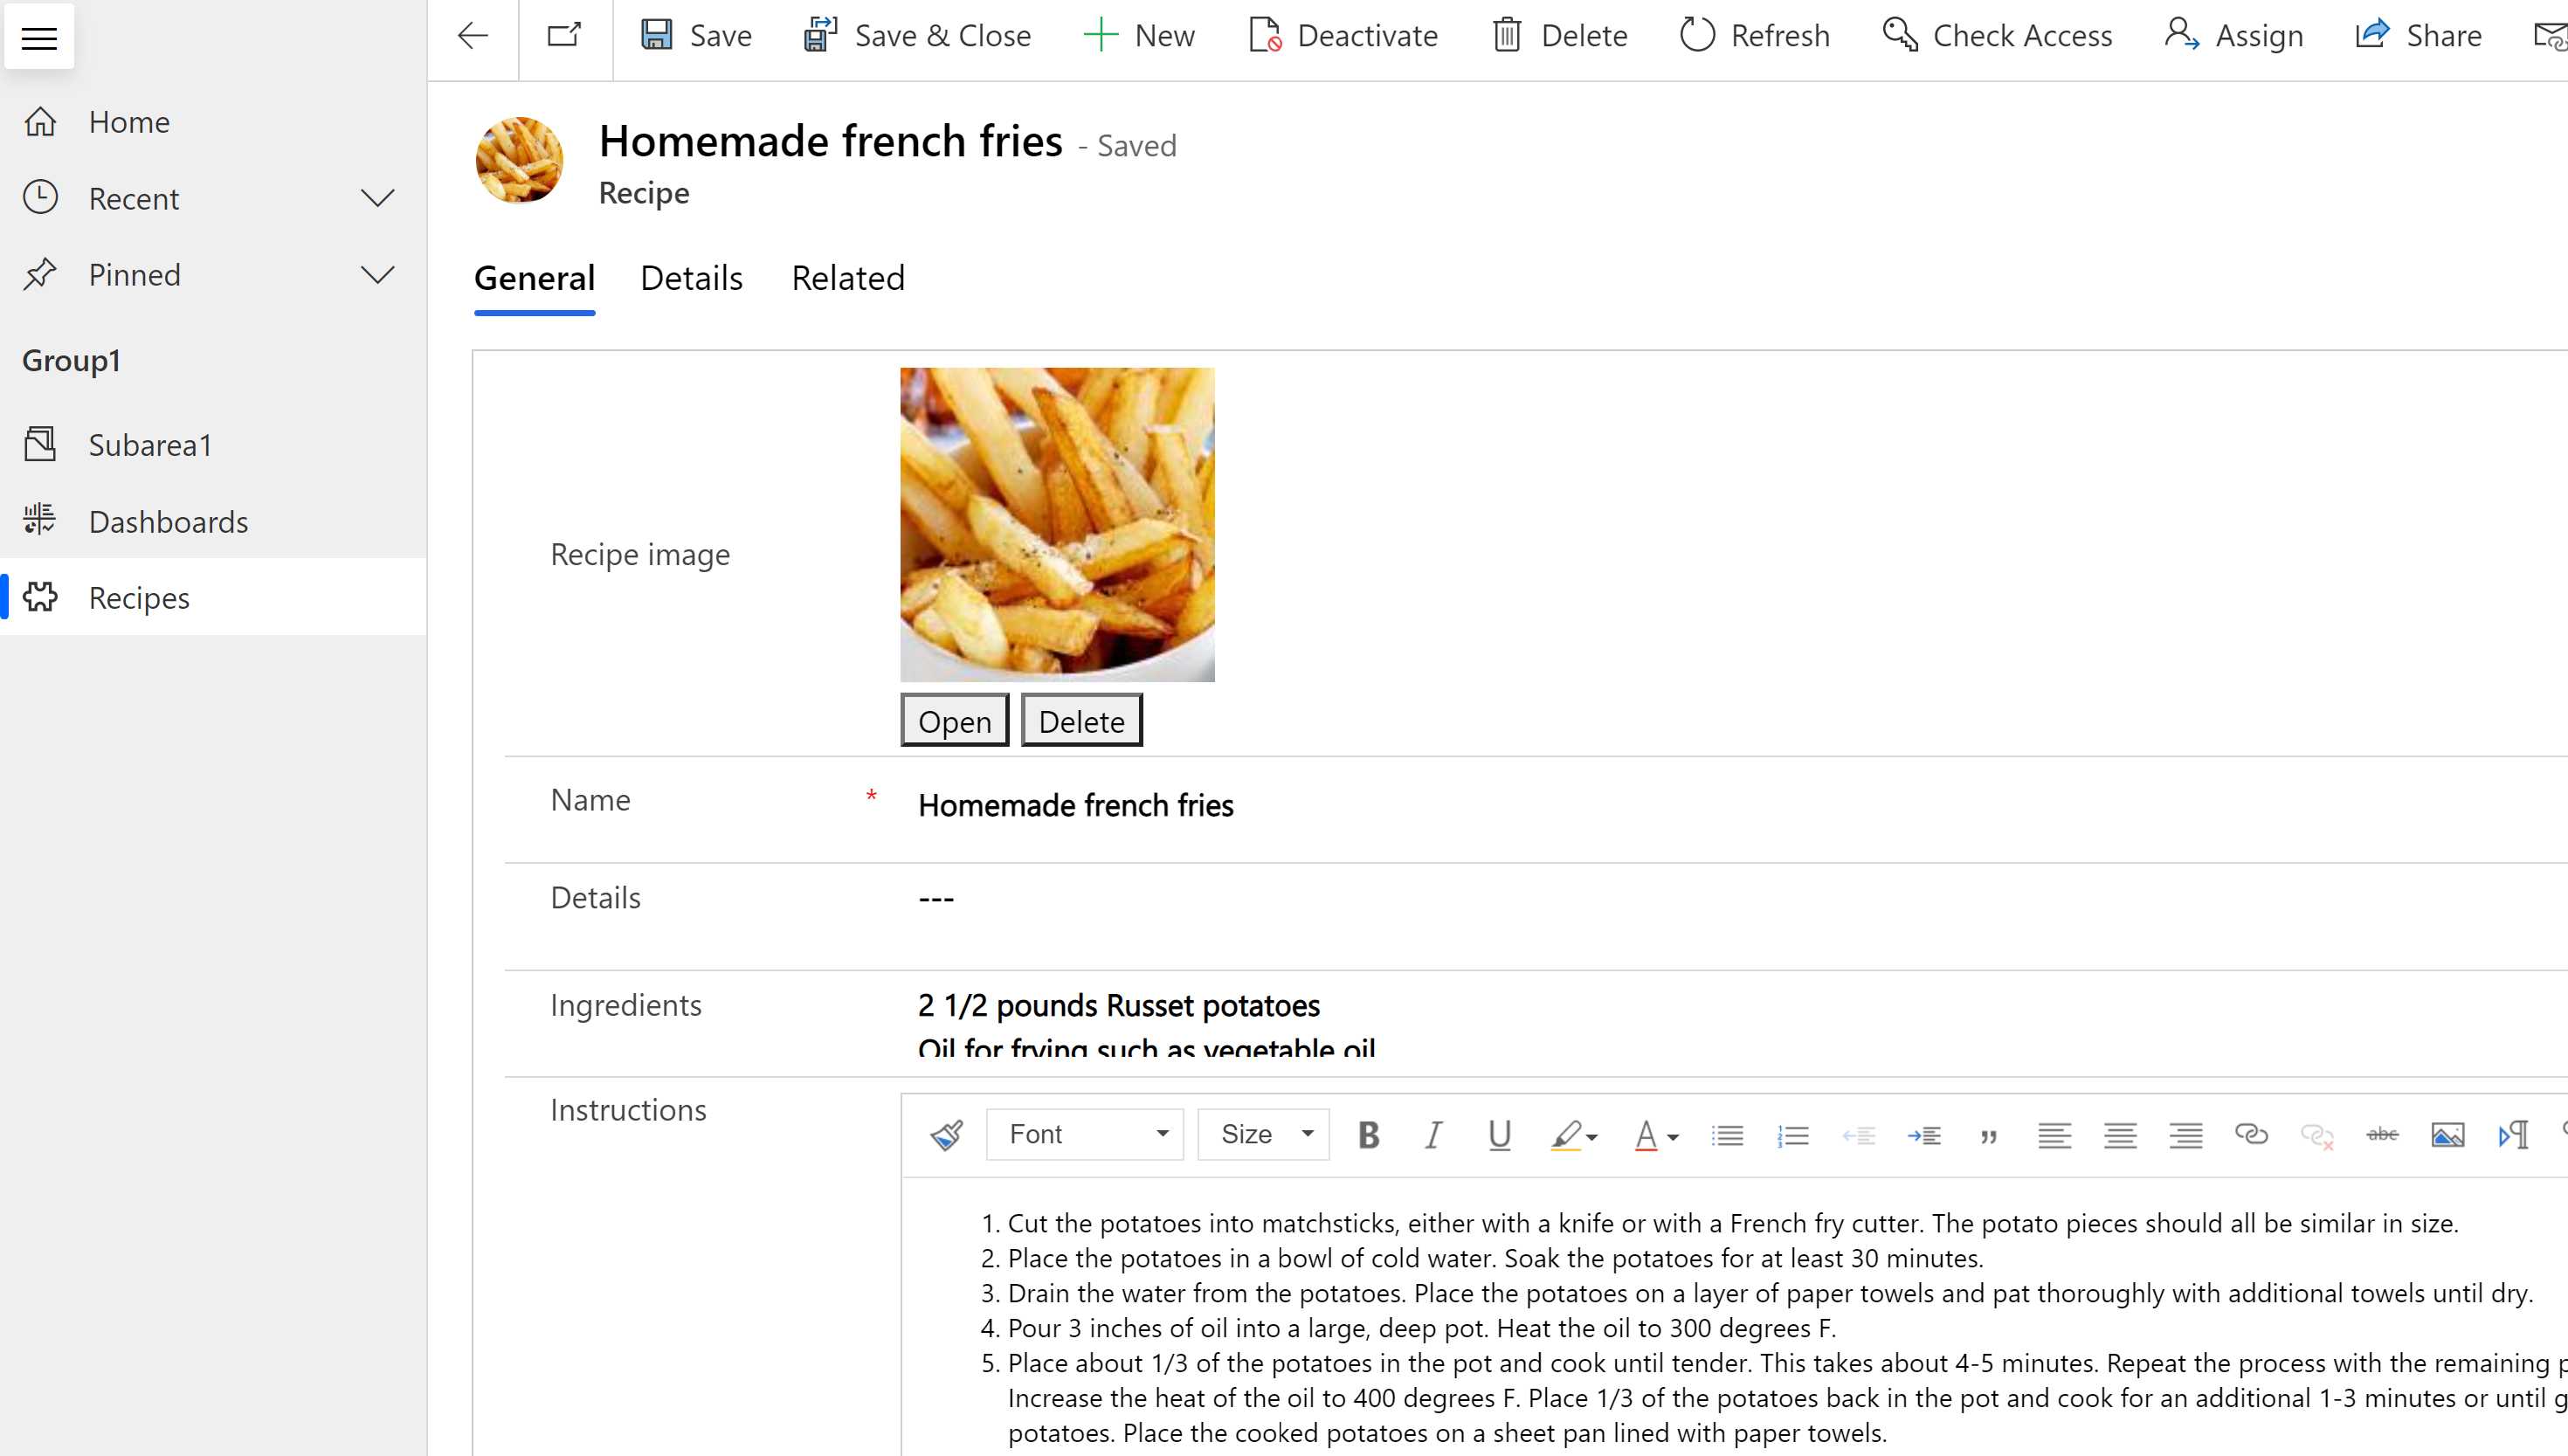 Formulir saat runtime dengan gambar utama french fries yang ditampilkan pada rekaman tabel resep